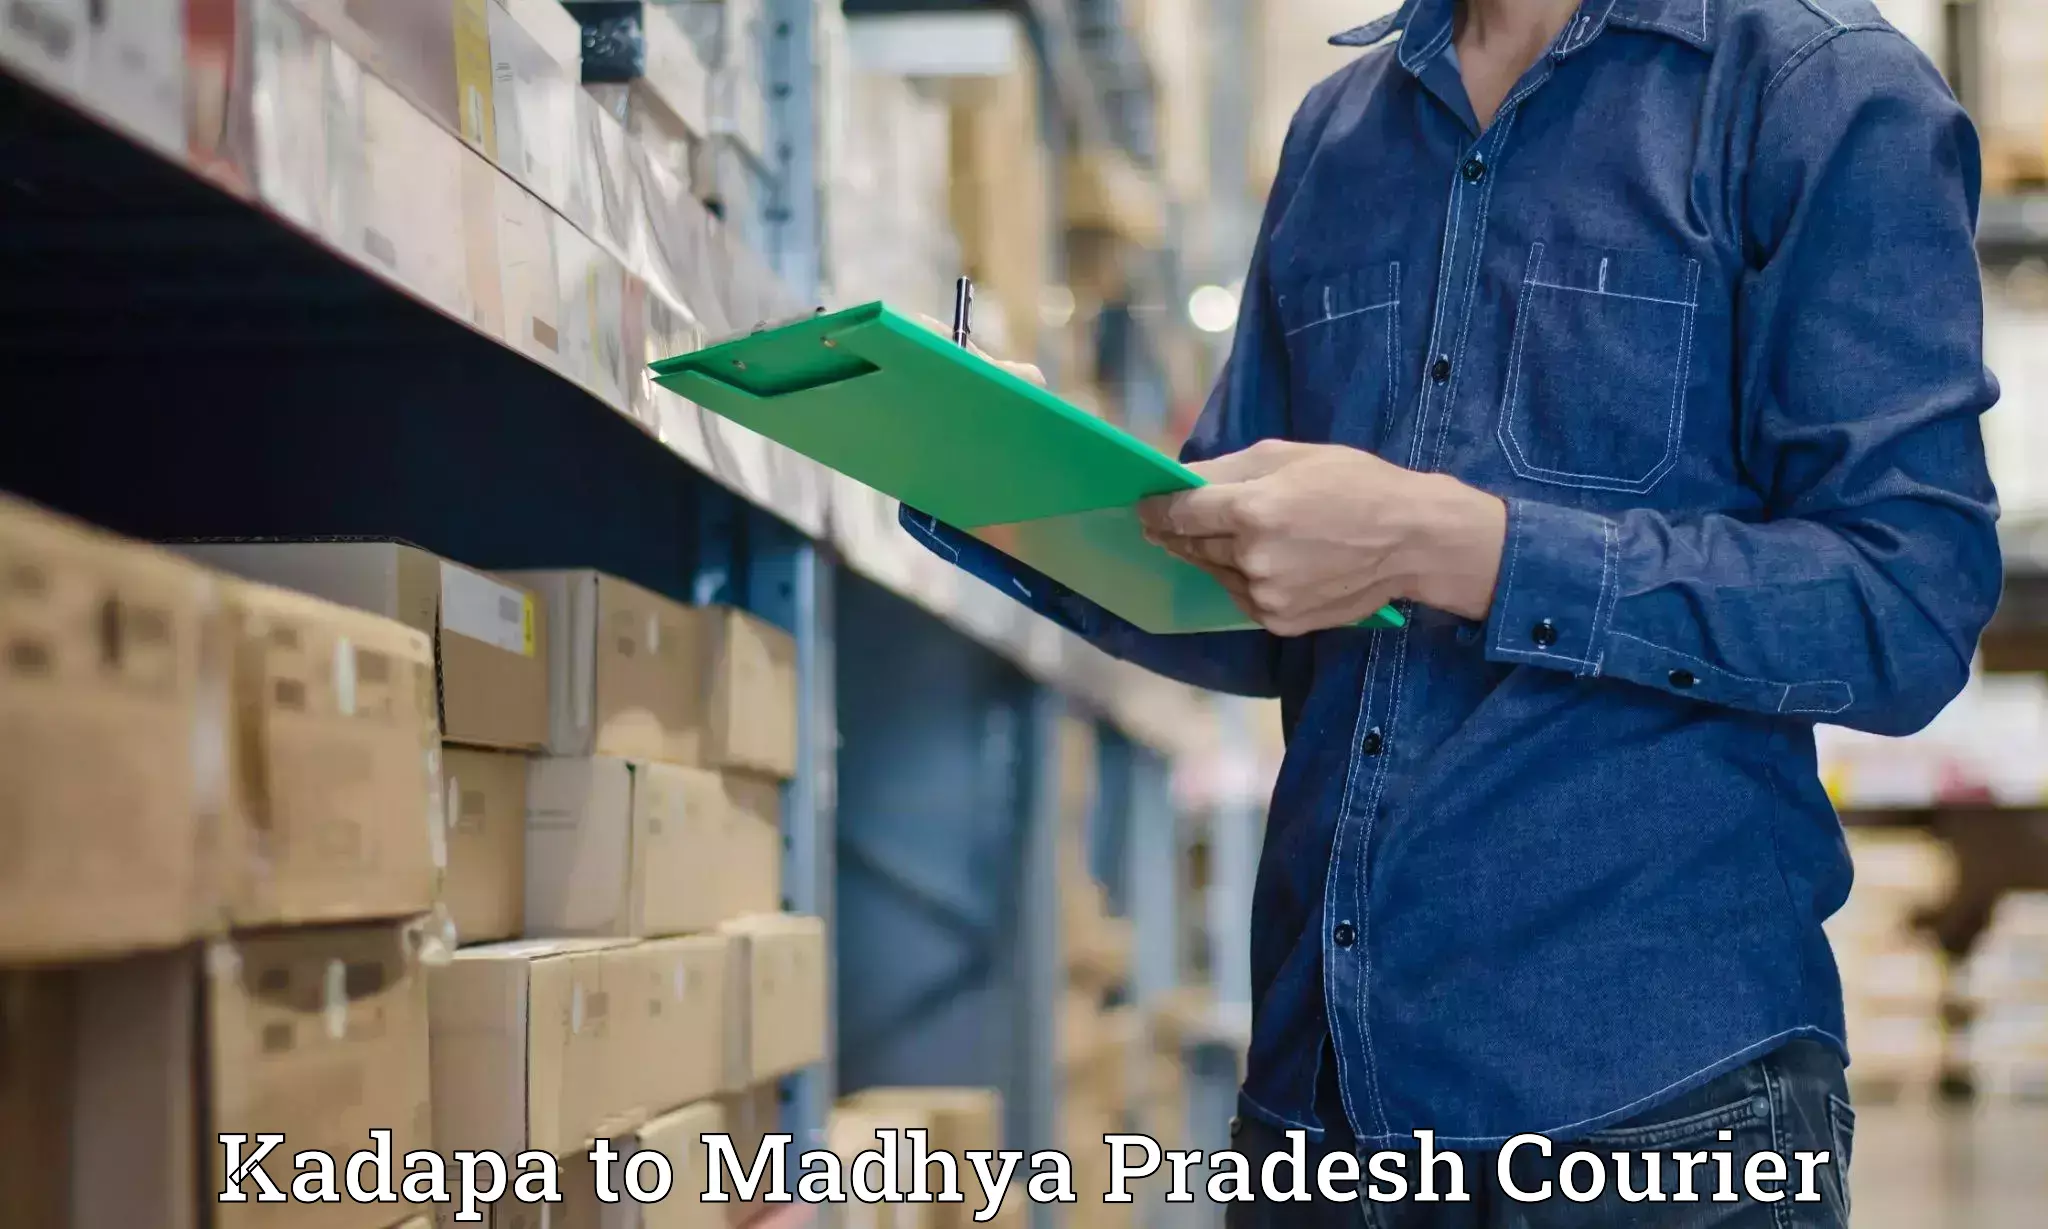 Smart shipping technology Kadapa to Bina